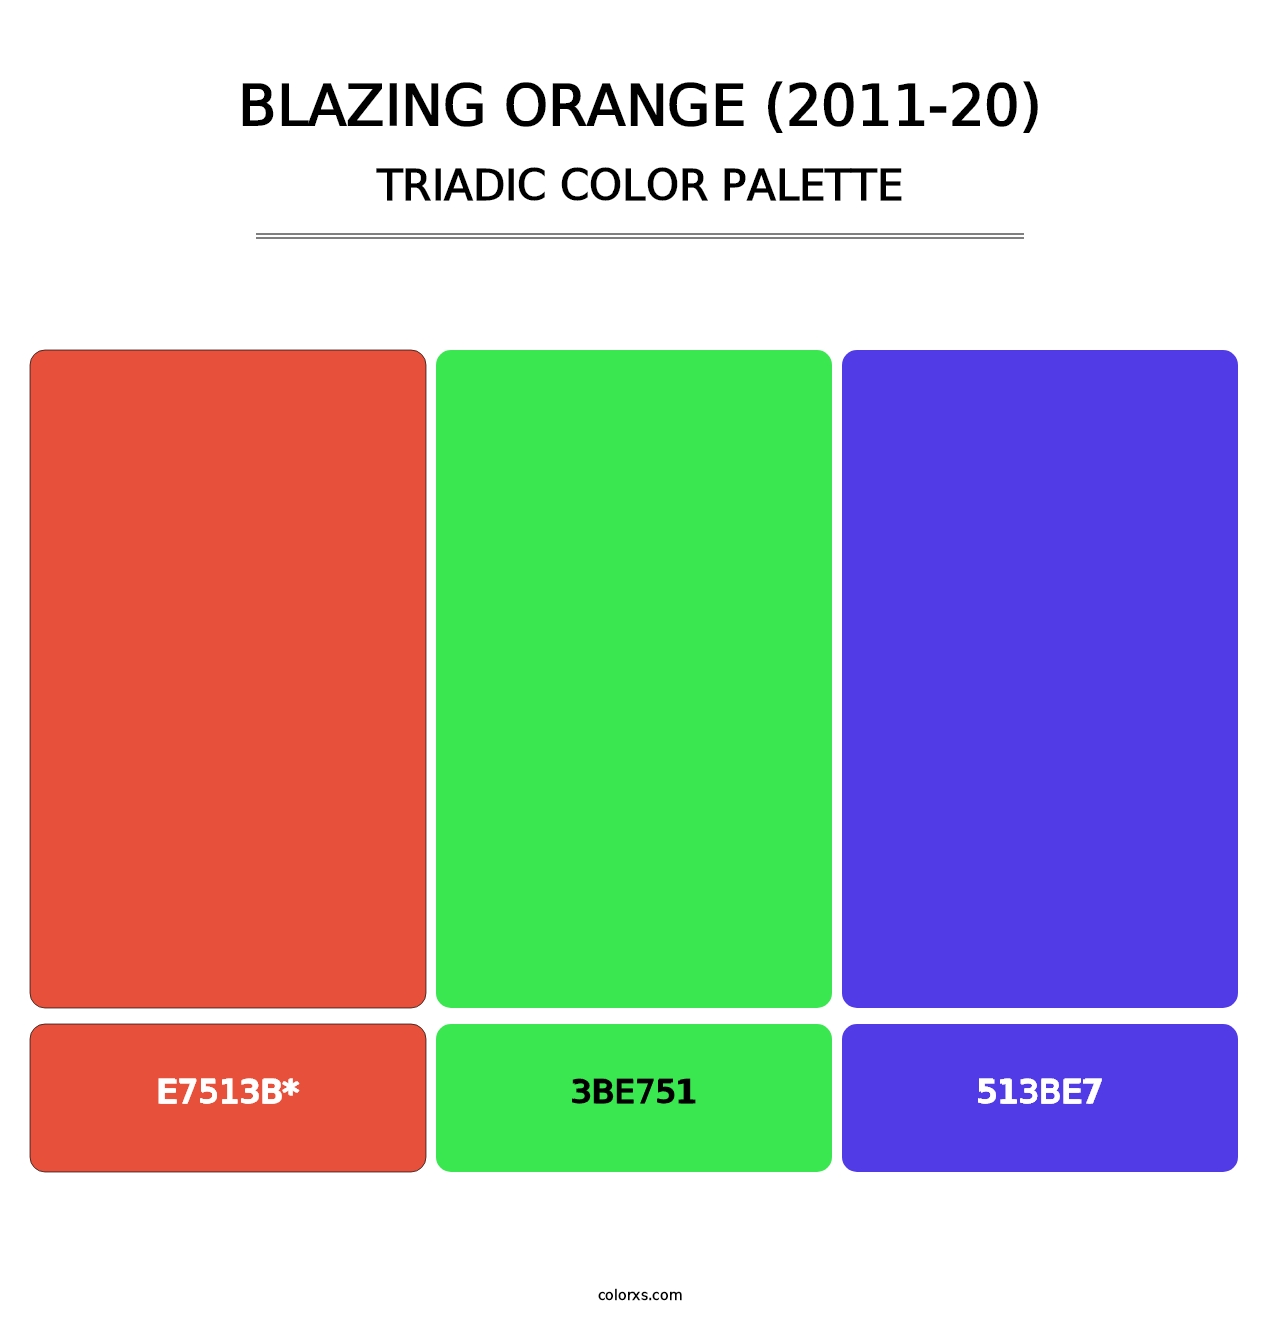 Blazing Orange (2011-20) - Triadic Color Palette